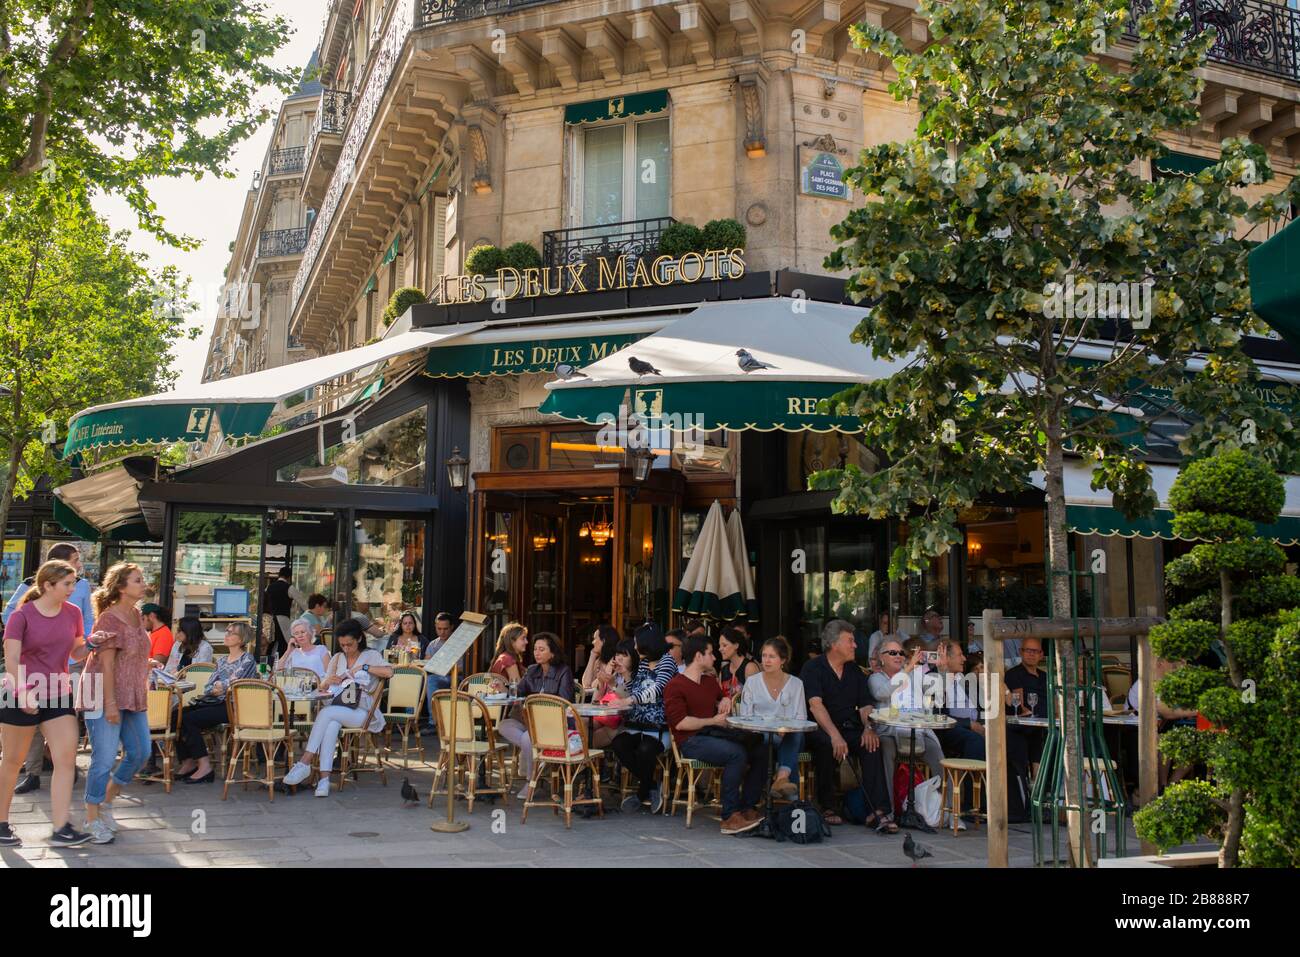 Il famoso caffè Les Deux magots si trova nella zona parigina di Saint Germain des Pres; giornata estiva soleggiata a Parigi. Persone sedute nel caffè francese fuori Foto Stock